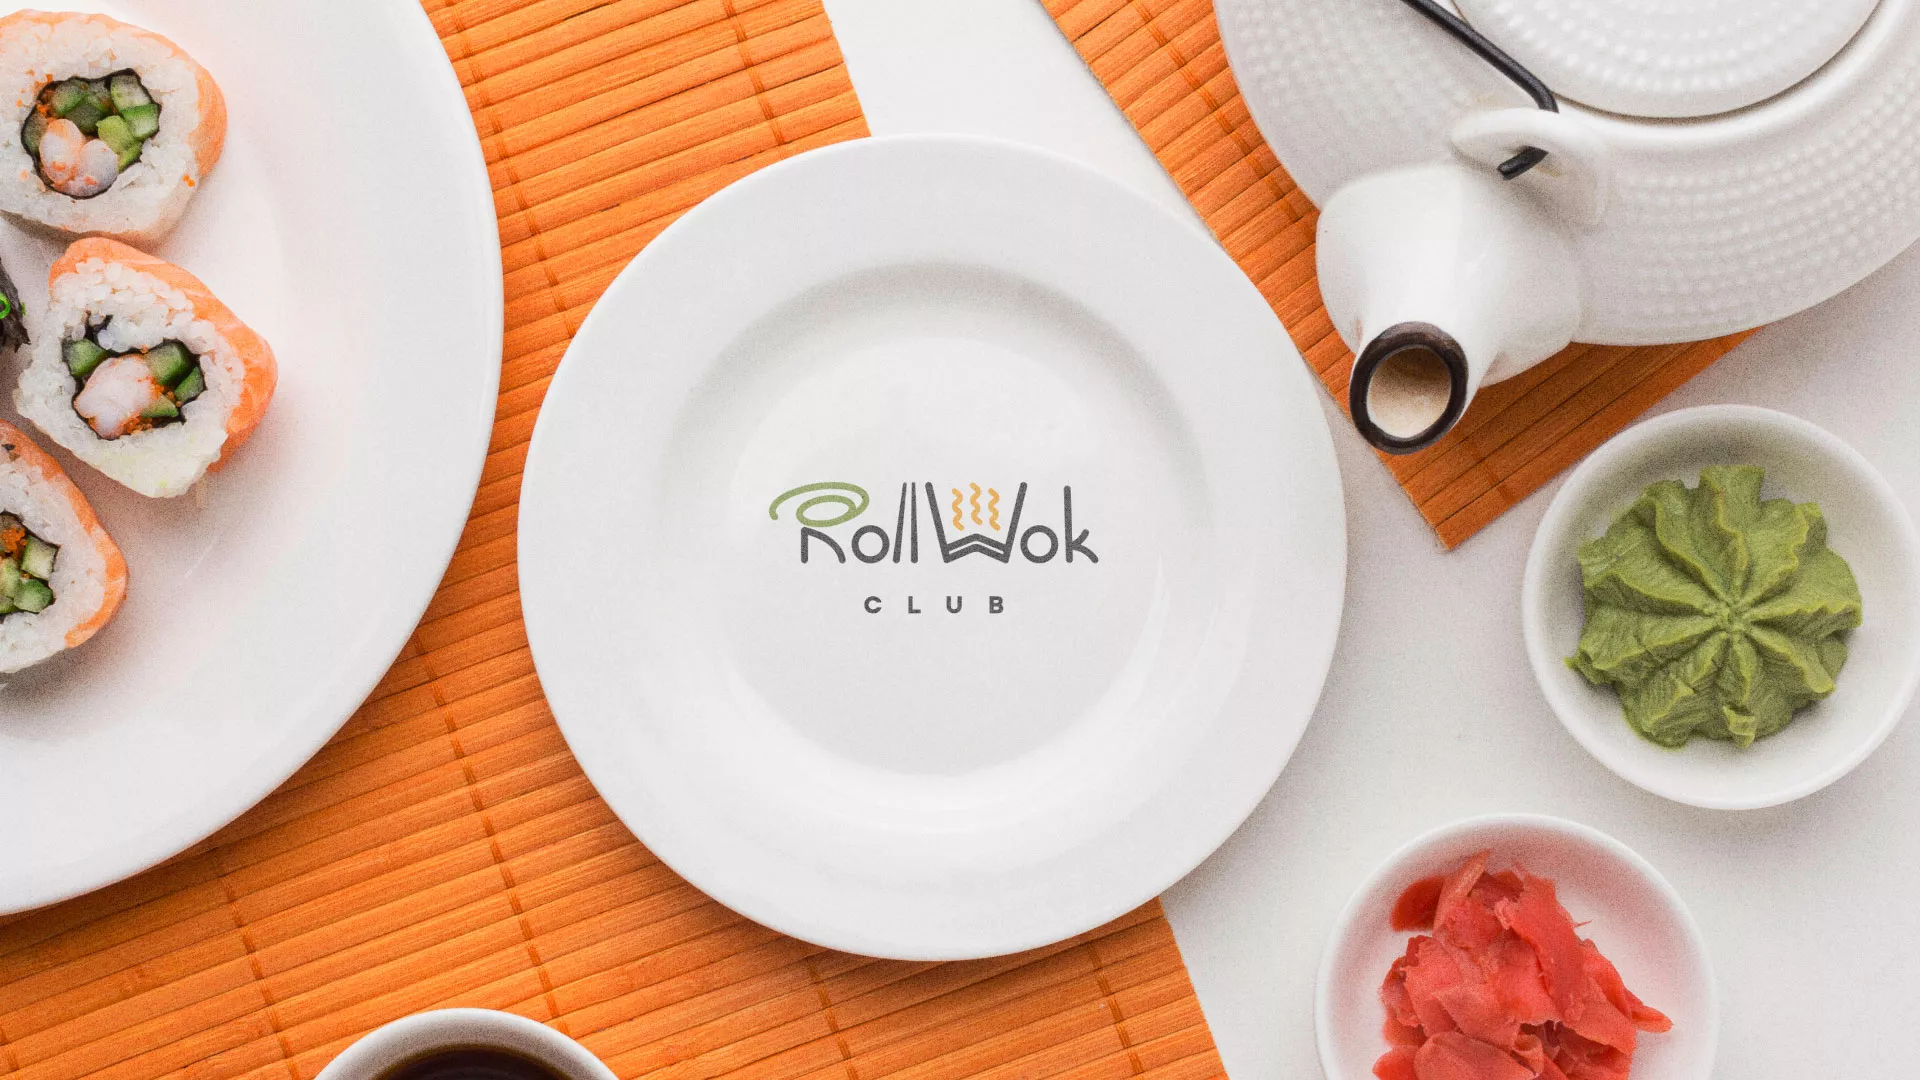 Разработка логотипа и фирменного стиля суши-бара «Roll Wok Club» в Рязани